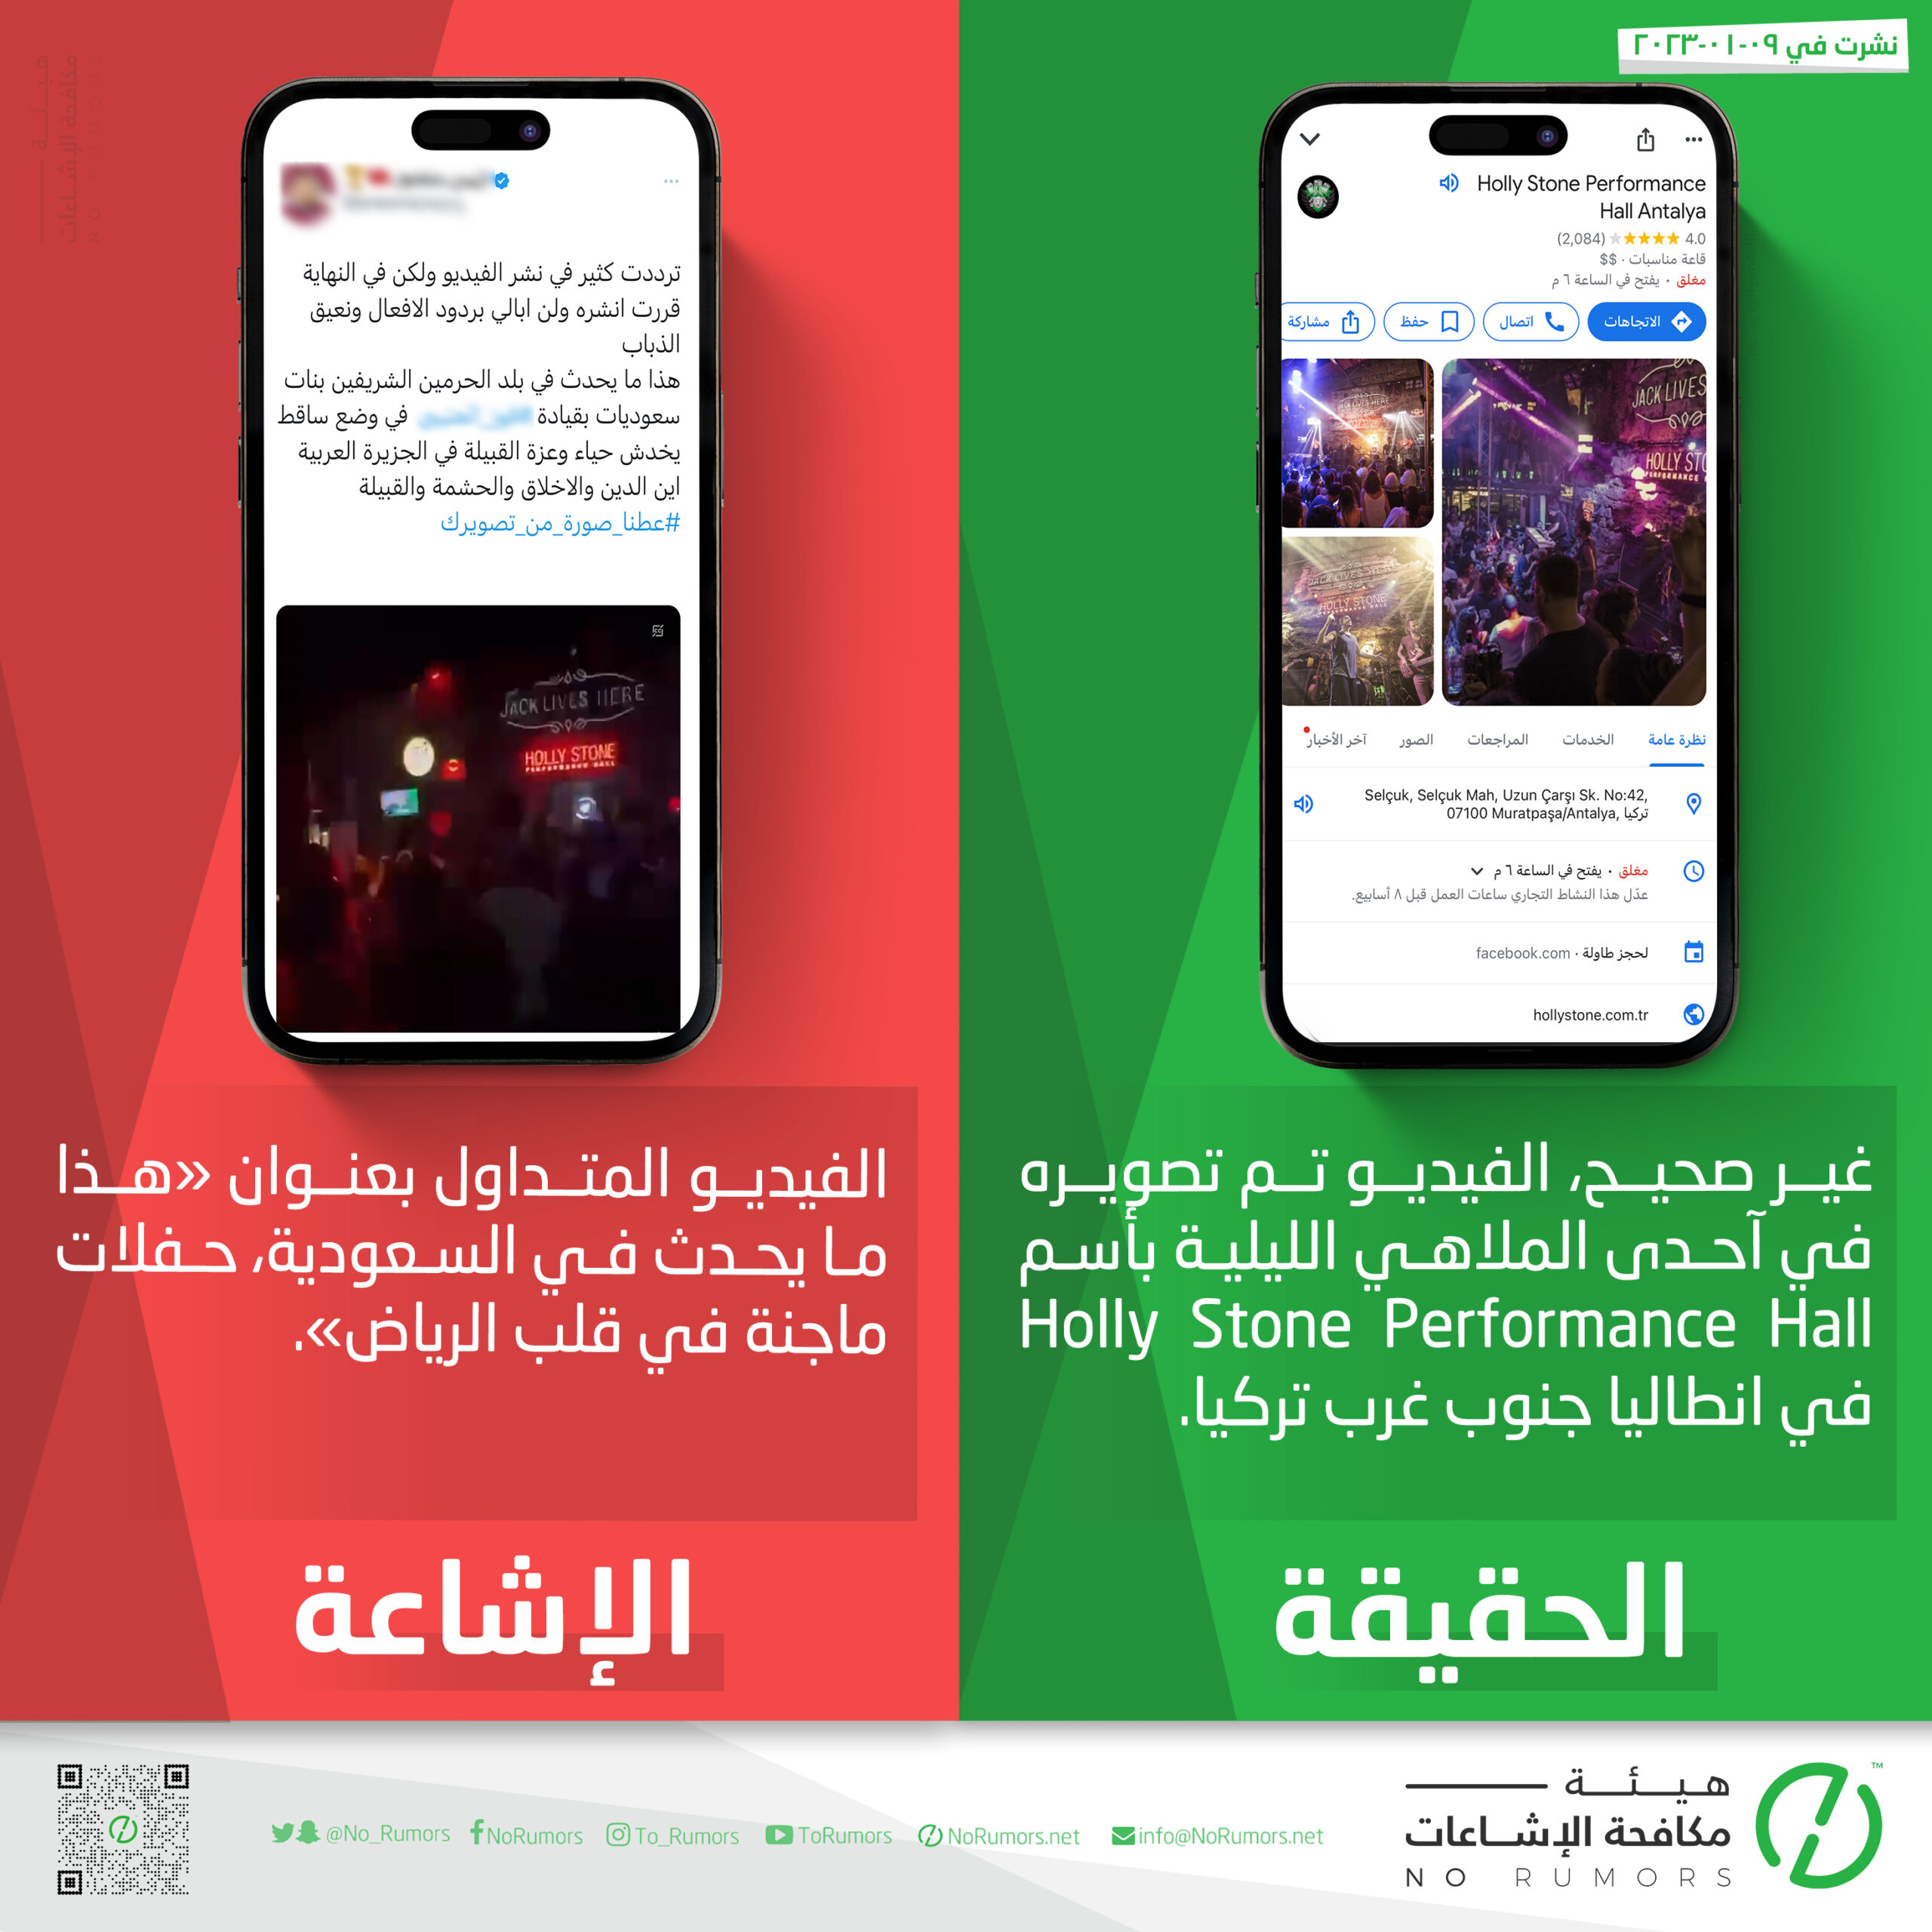 حقيقة الفيديو المتداول بعنوان «هذا ما يحدث في السعودية، حفلات ماجنة في قلب الرياض»